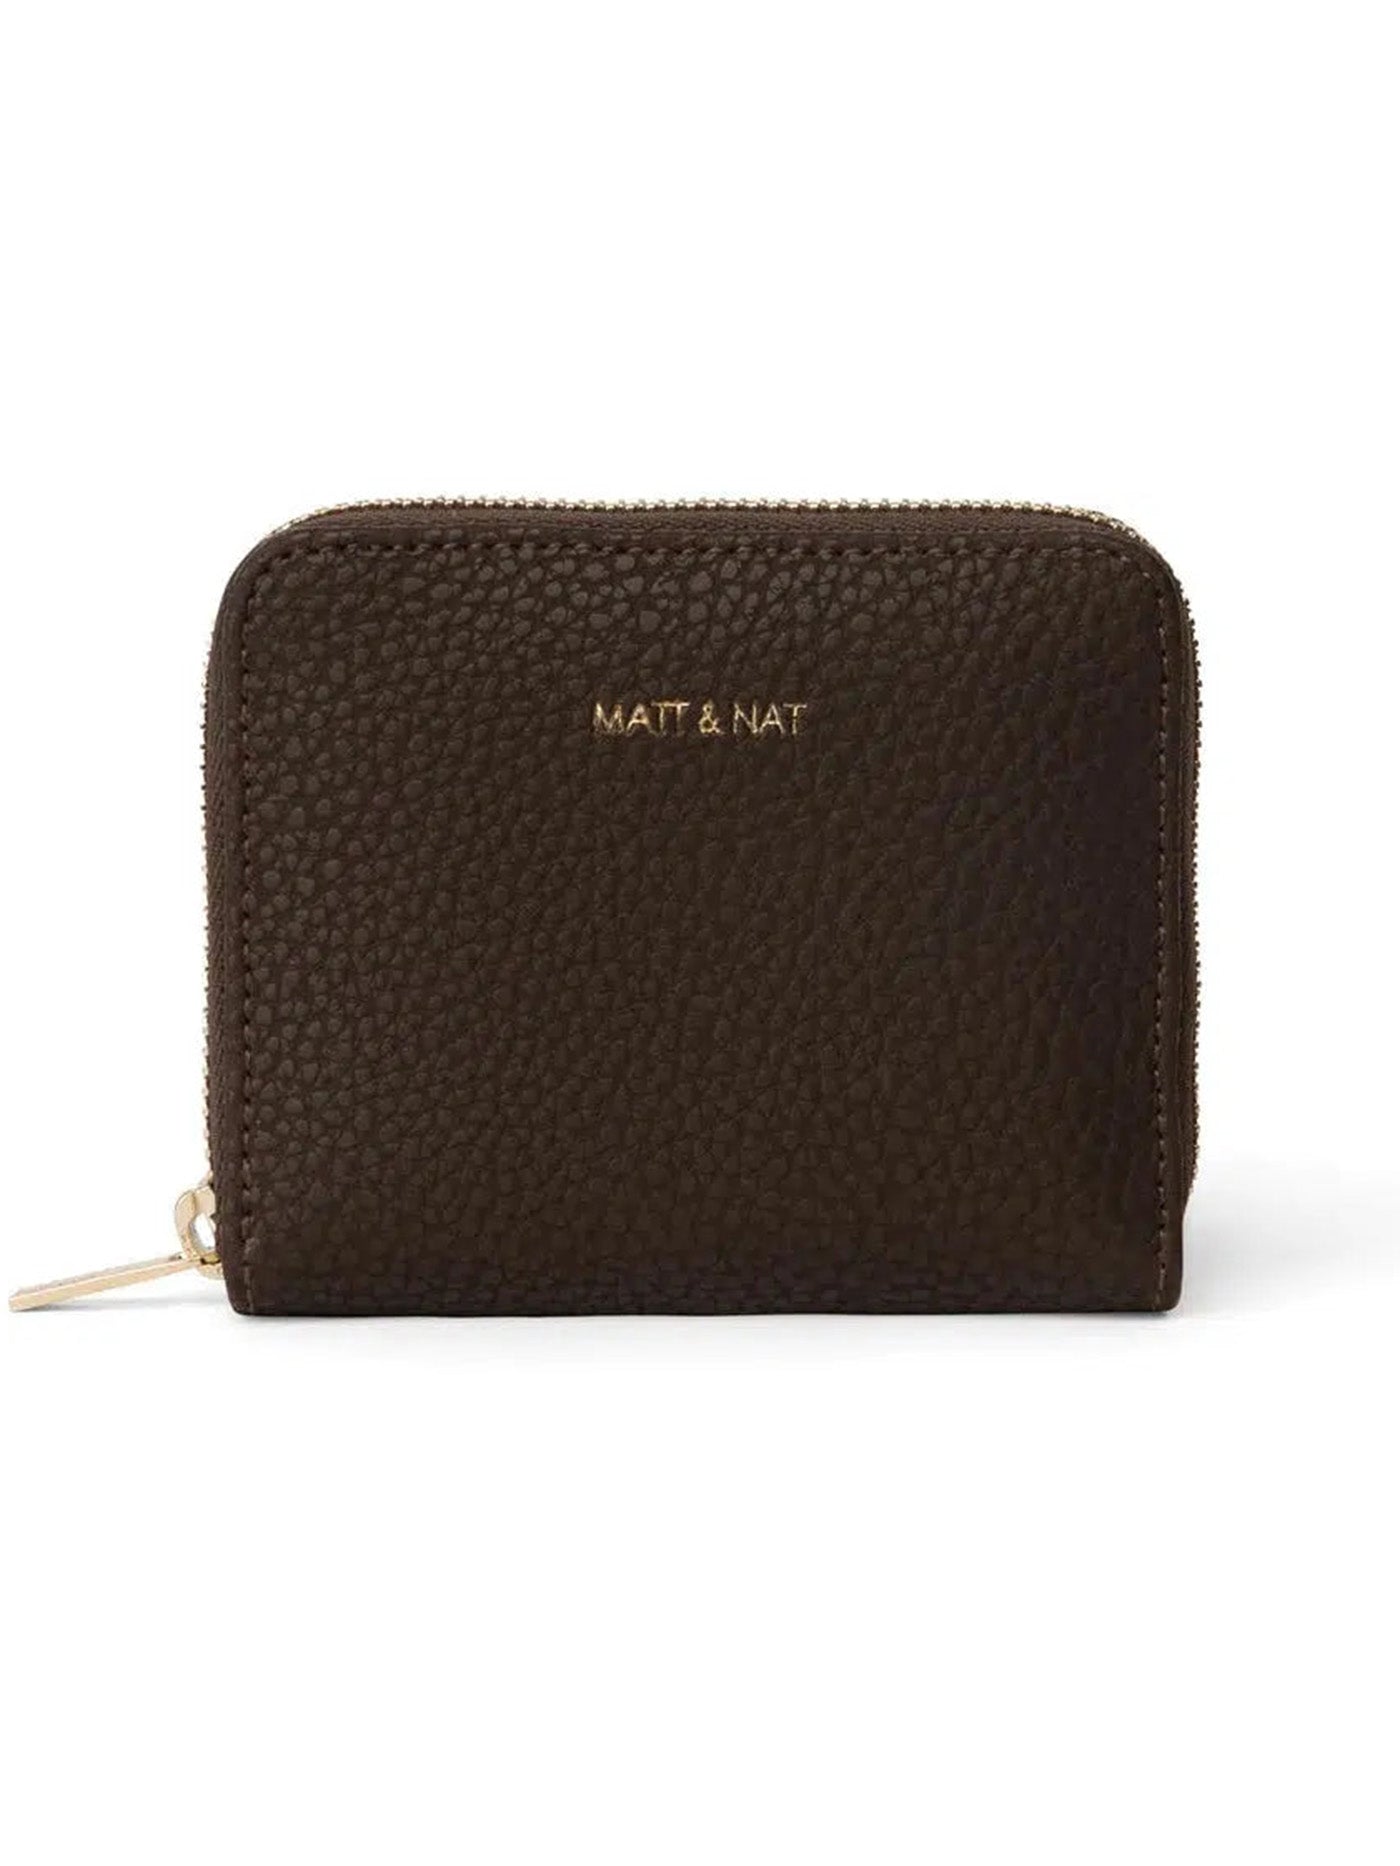 Matt & Nat Rue Purity Collection Wallet